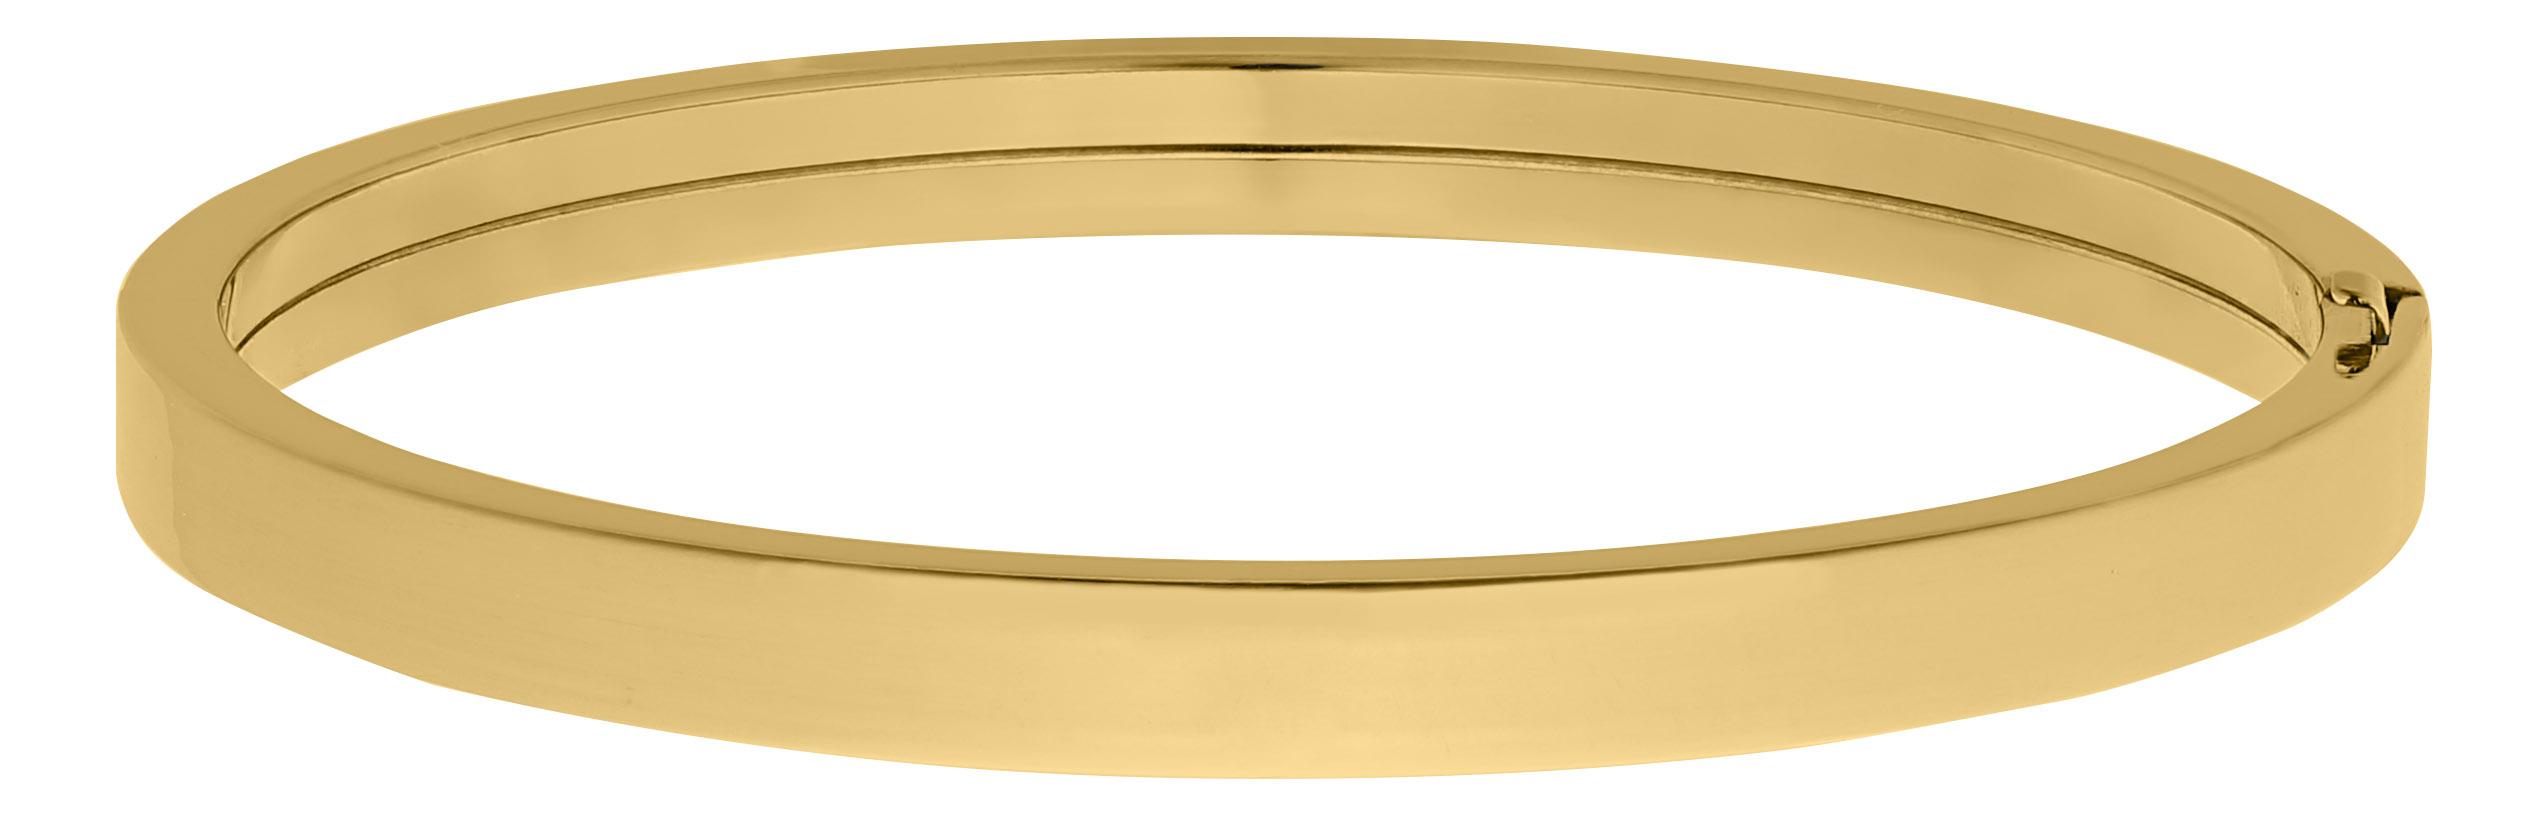 Polished Gold Filled Bangle Bracelet